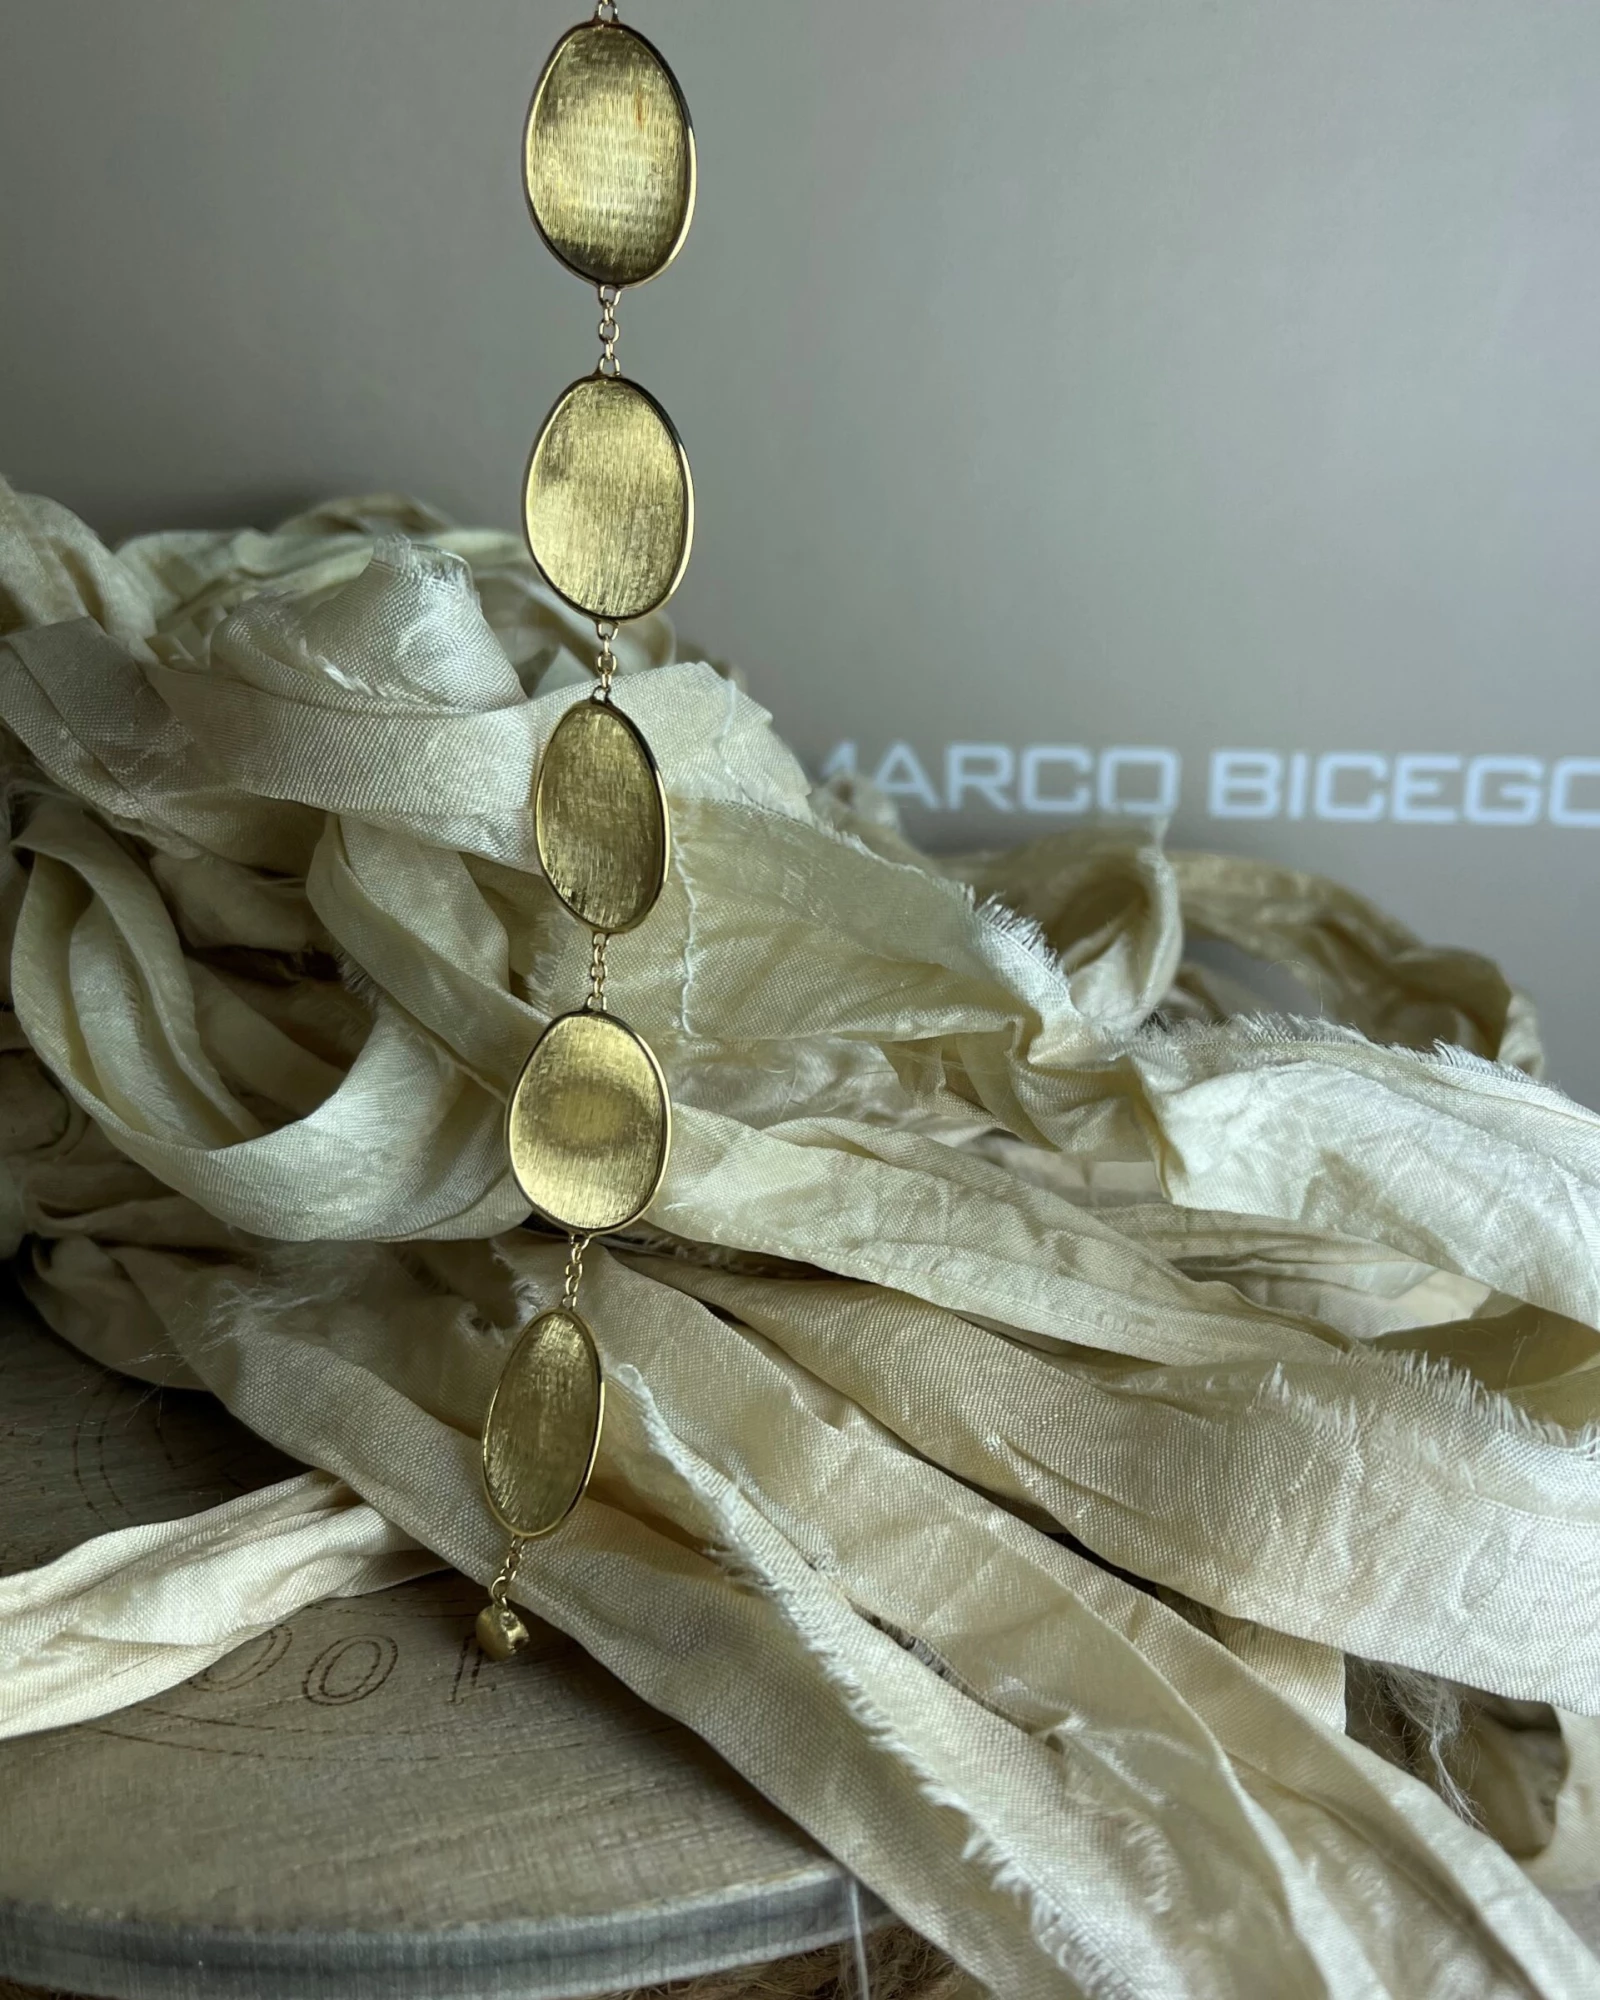 (012)Marco Bicego Bracciale oro cod: BB2099 (Y-02-18,0)